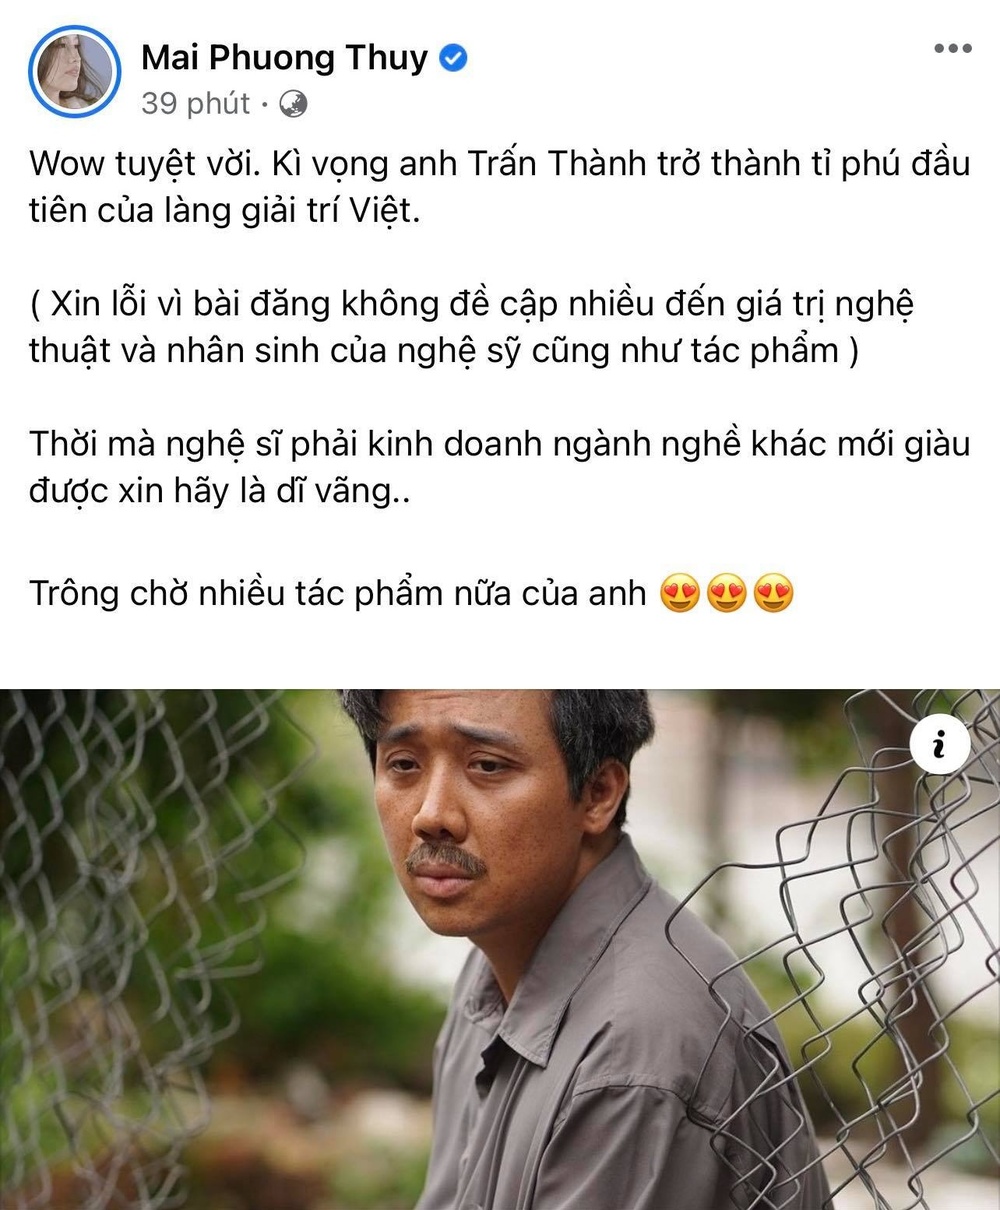  
"Kì vọng anh Trấn Thành trở thành tỉ phú đầu tiên của làng giải trí Việt." - Mai Phương Thúy. (Ảnh: Chụp màn hình)